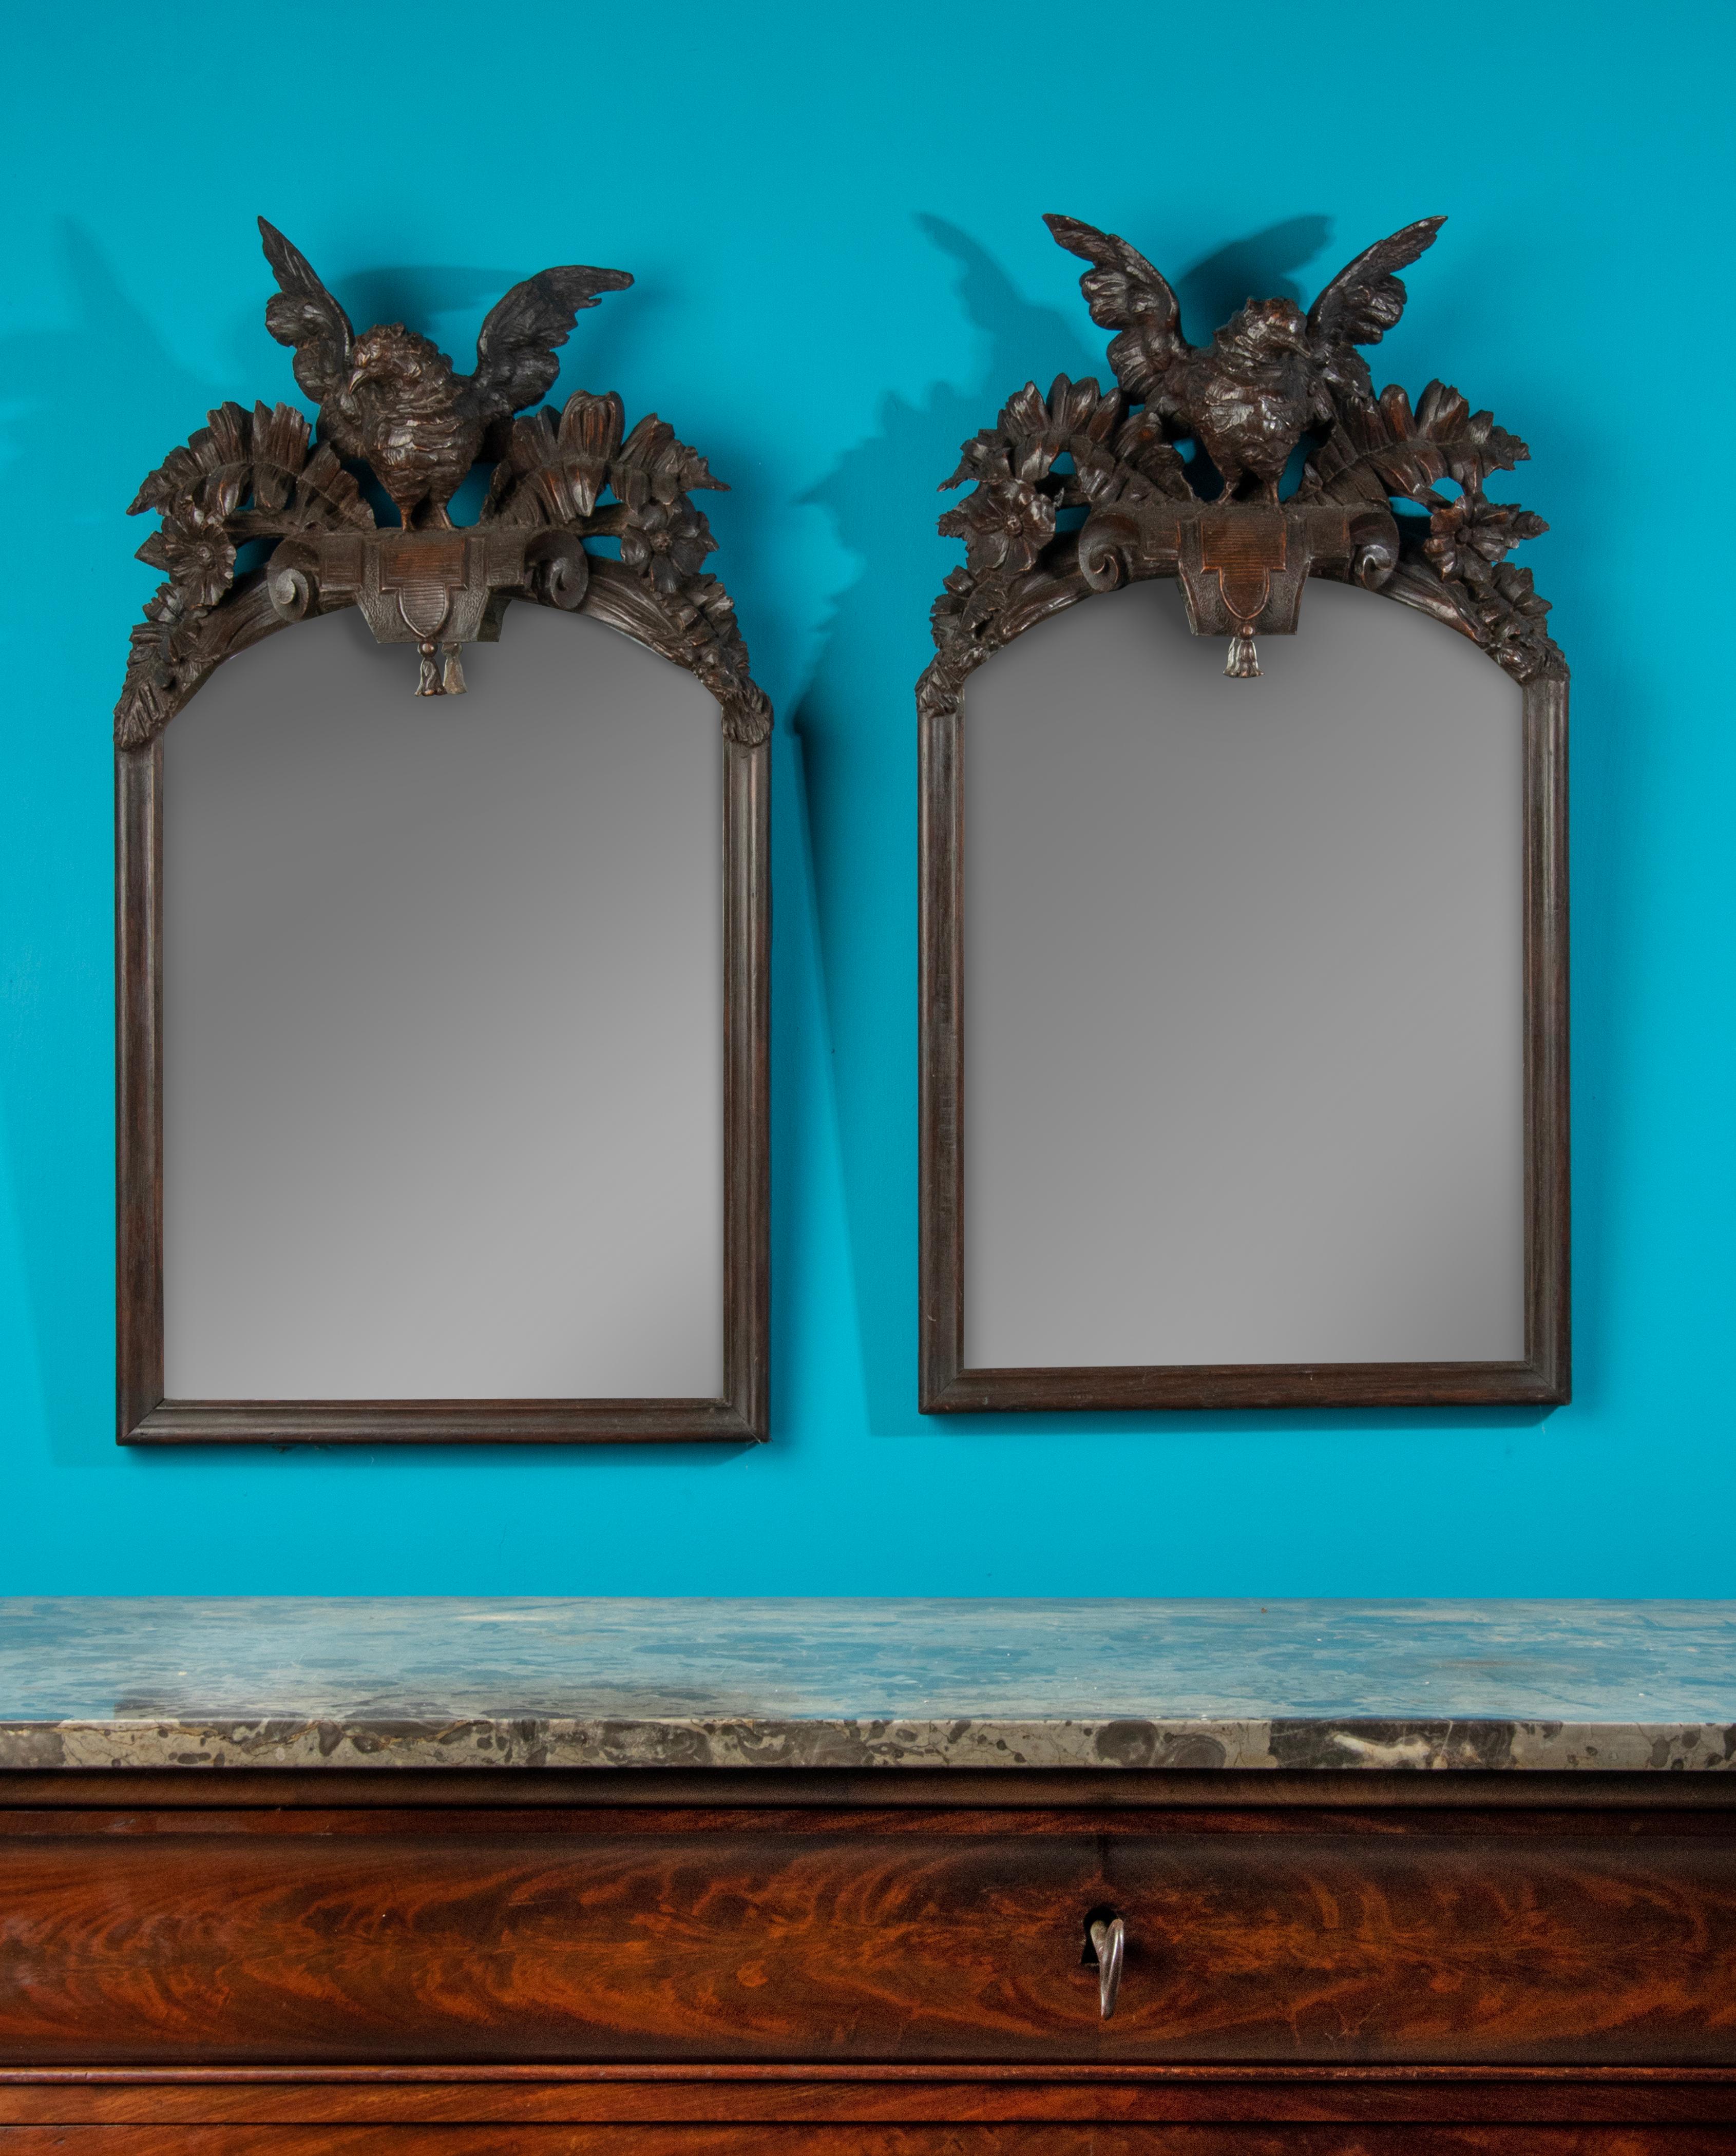 Une paire d'élégants miroirs français, sculptés en bois de chêne massif dans le style de la Forêt-Noire. L'oiseau est représenté sur les deux miroirs, chacun de manière asymétrique, de sorte qu'il s'agit d'un couple original. Les oiseaux sont